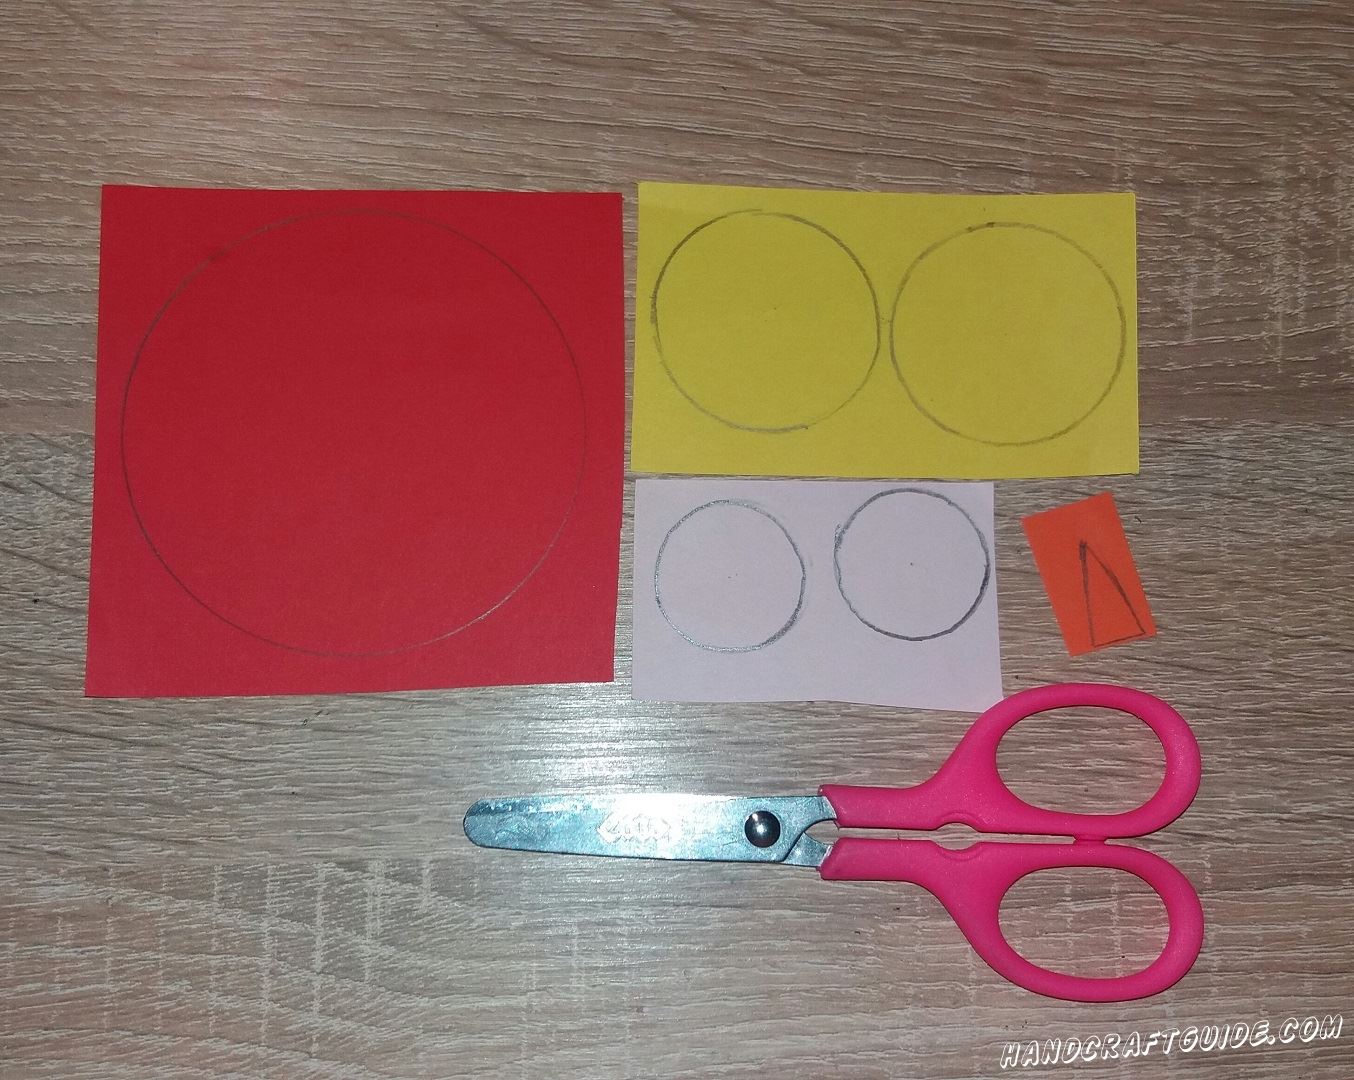 Для начала подготовим все необходимые нам детали. Нам нужно вырезать большой круг красного цвета, 2 меньших круга желтого цвета, 2 белых, самых маленьких, круга и 1 оранжевый треугольничек.